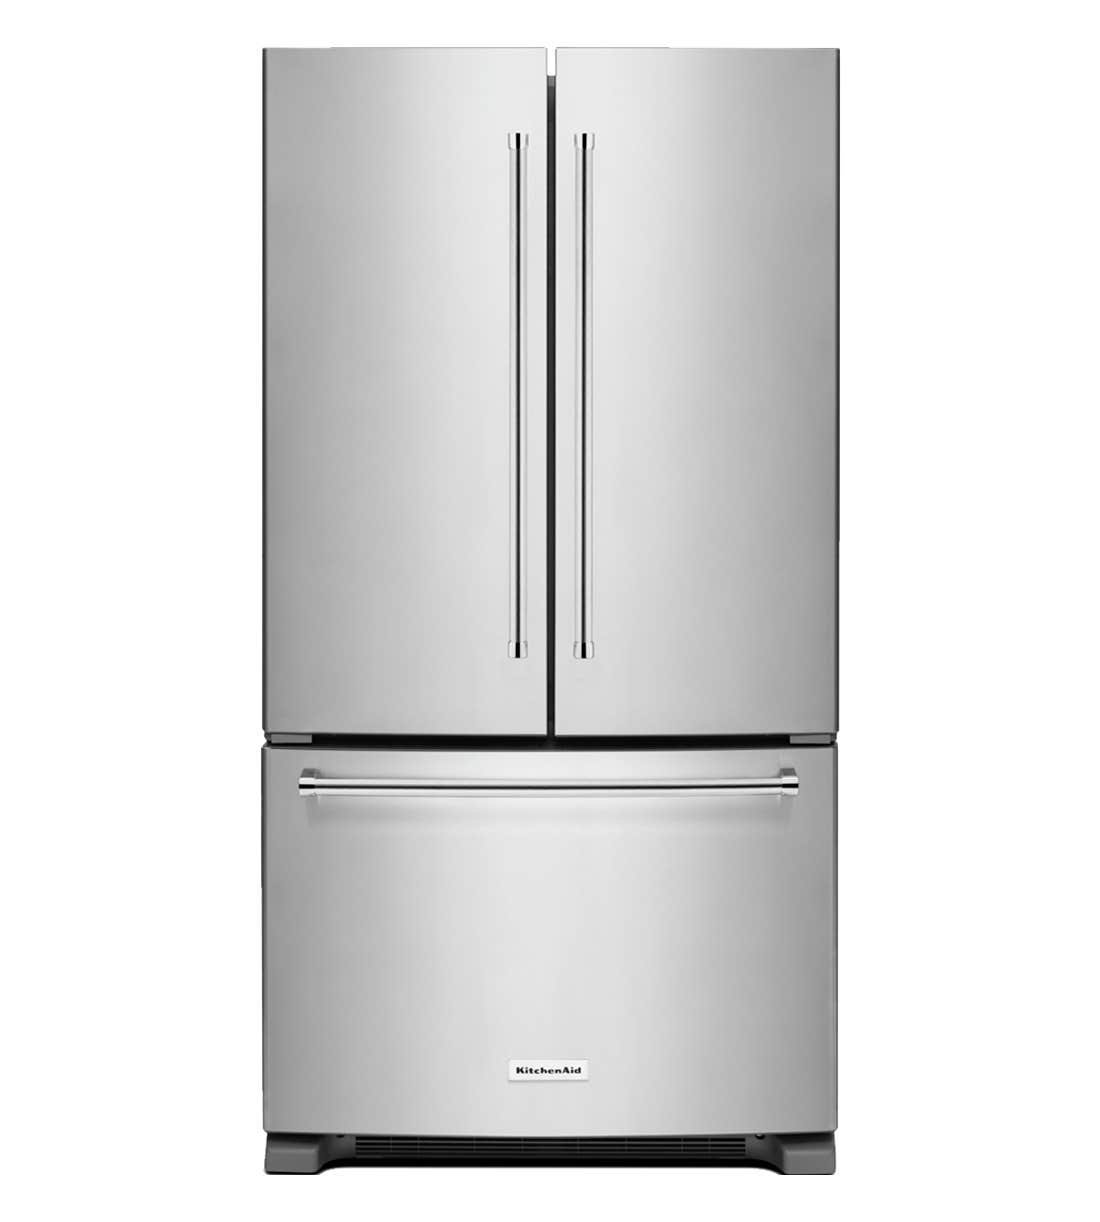 Refrigérateur KitchenAid KRFF305ESS Acier Inoxydable Portes françaises largeur 36 pouces Capacité 25.19 pieds cubes